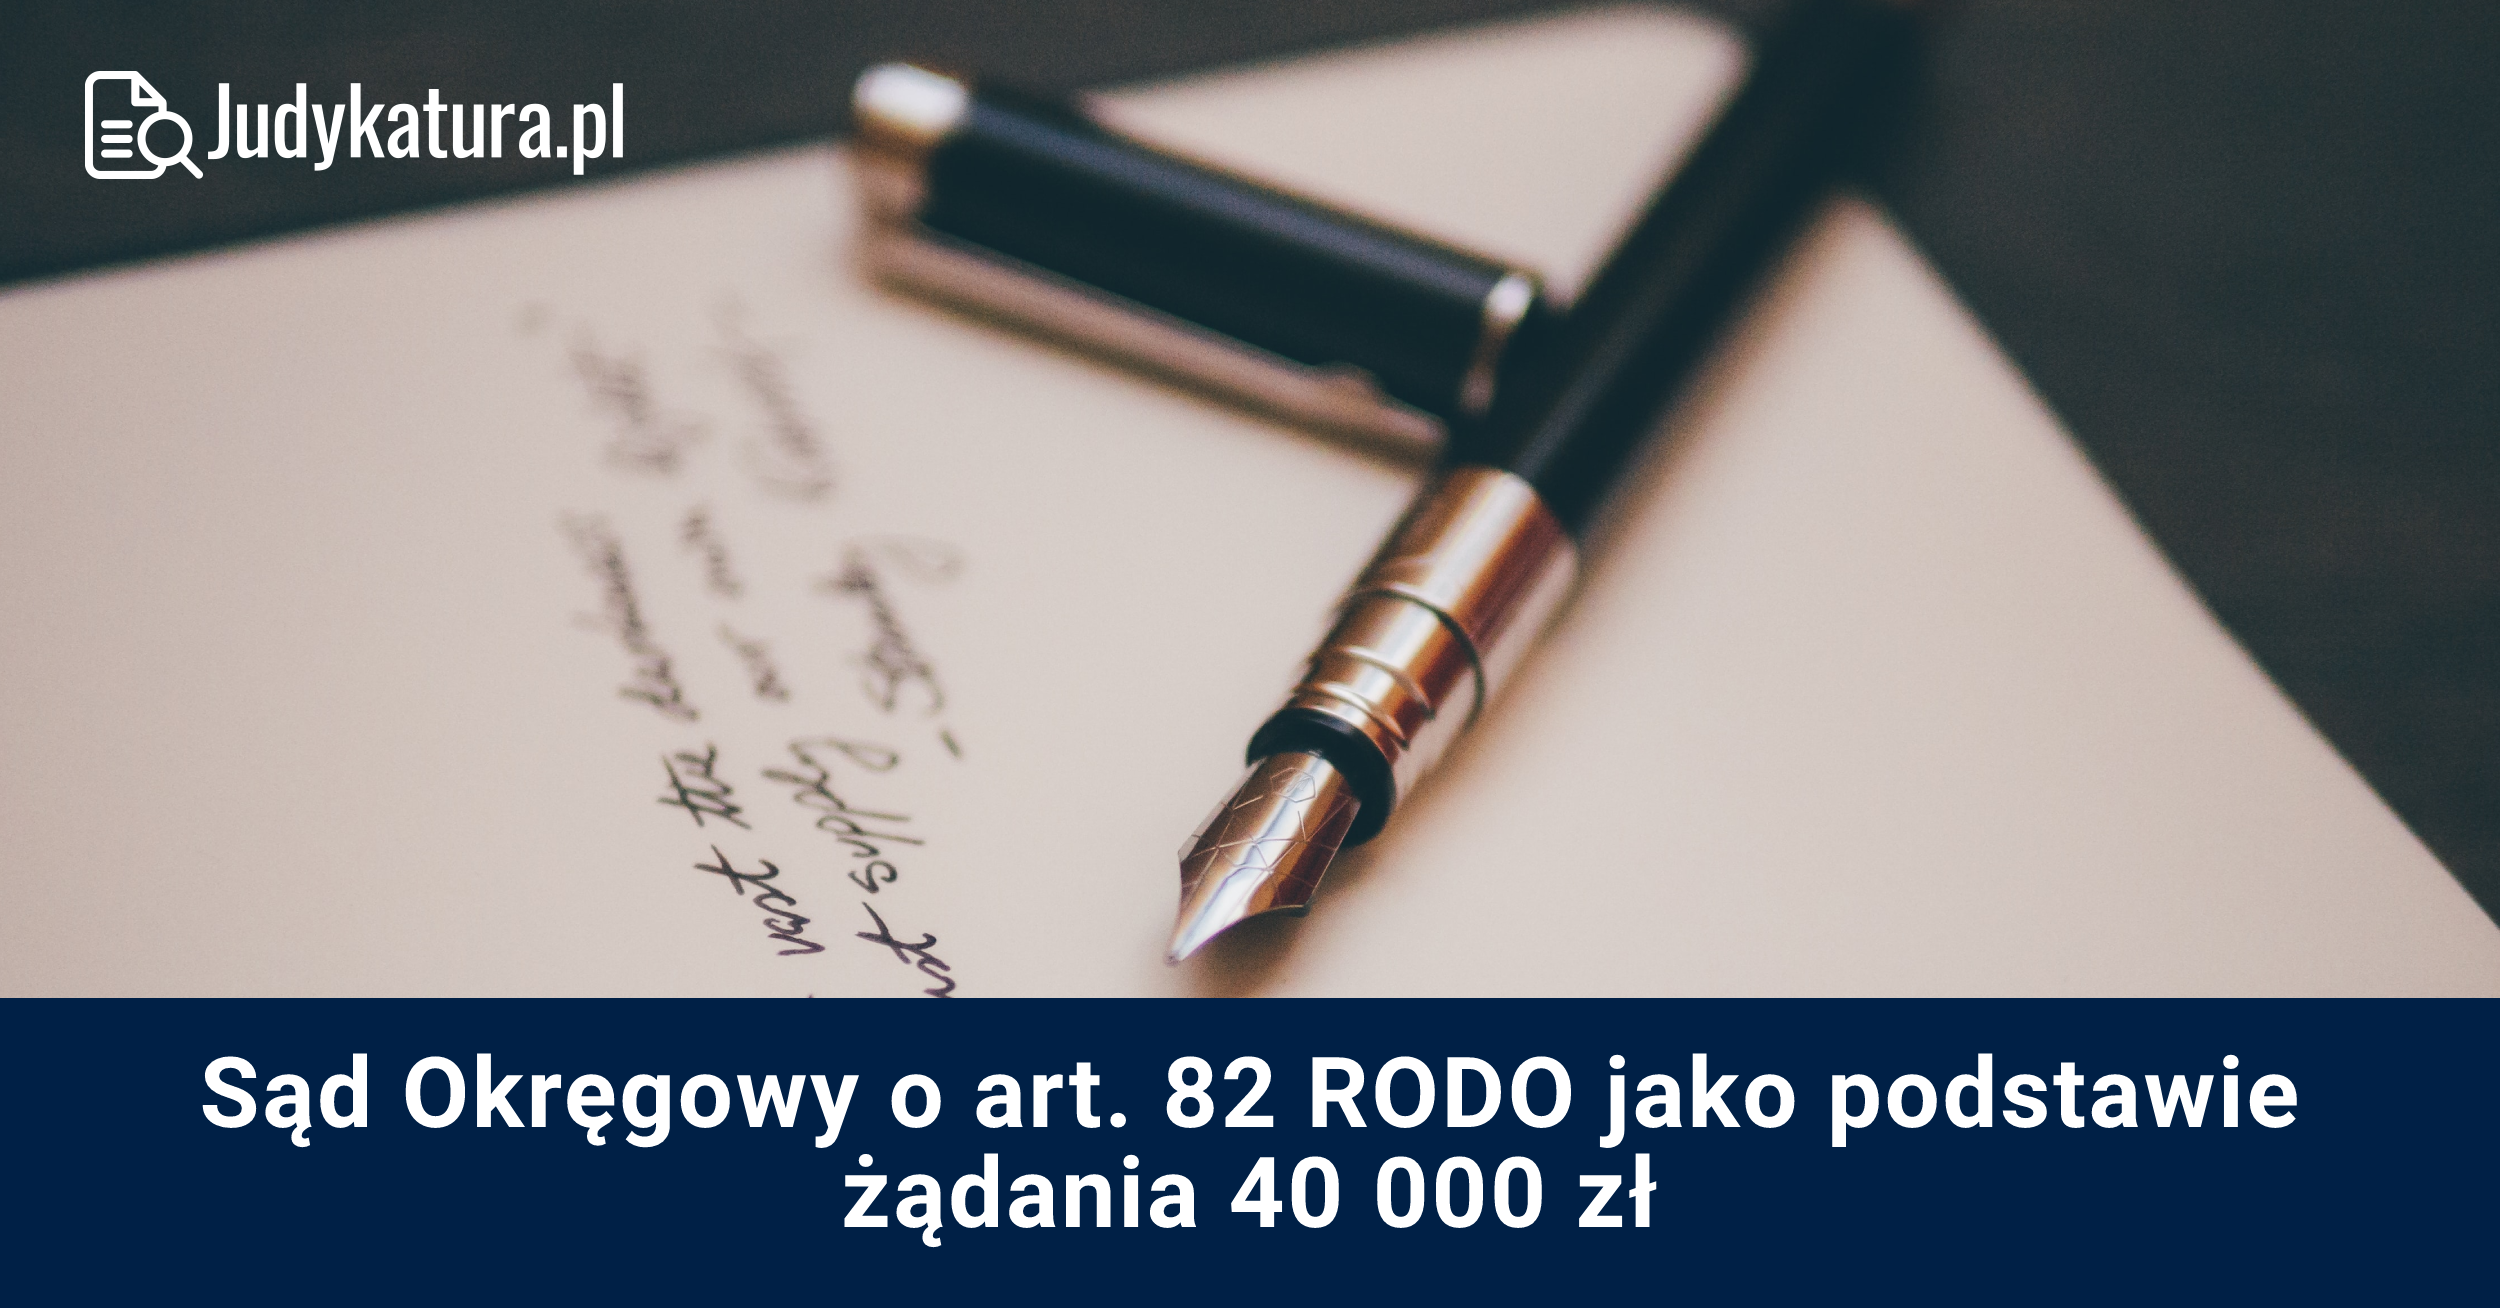 Sąd Okręgowy o art. 82 RODO jako podstawie żądania 40 000 zł